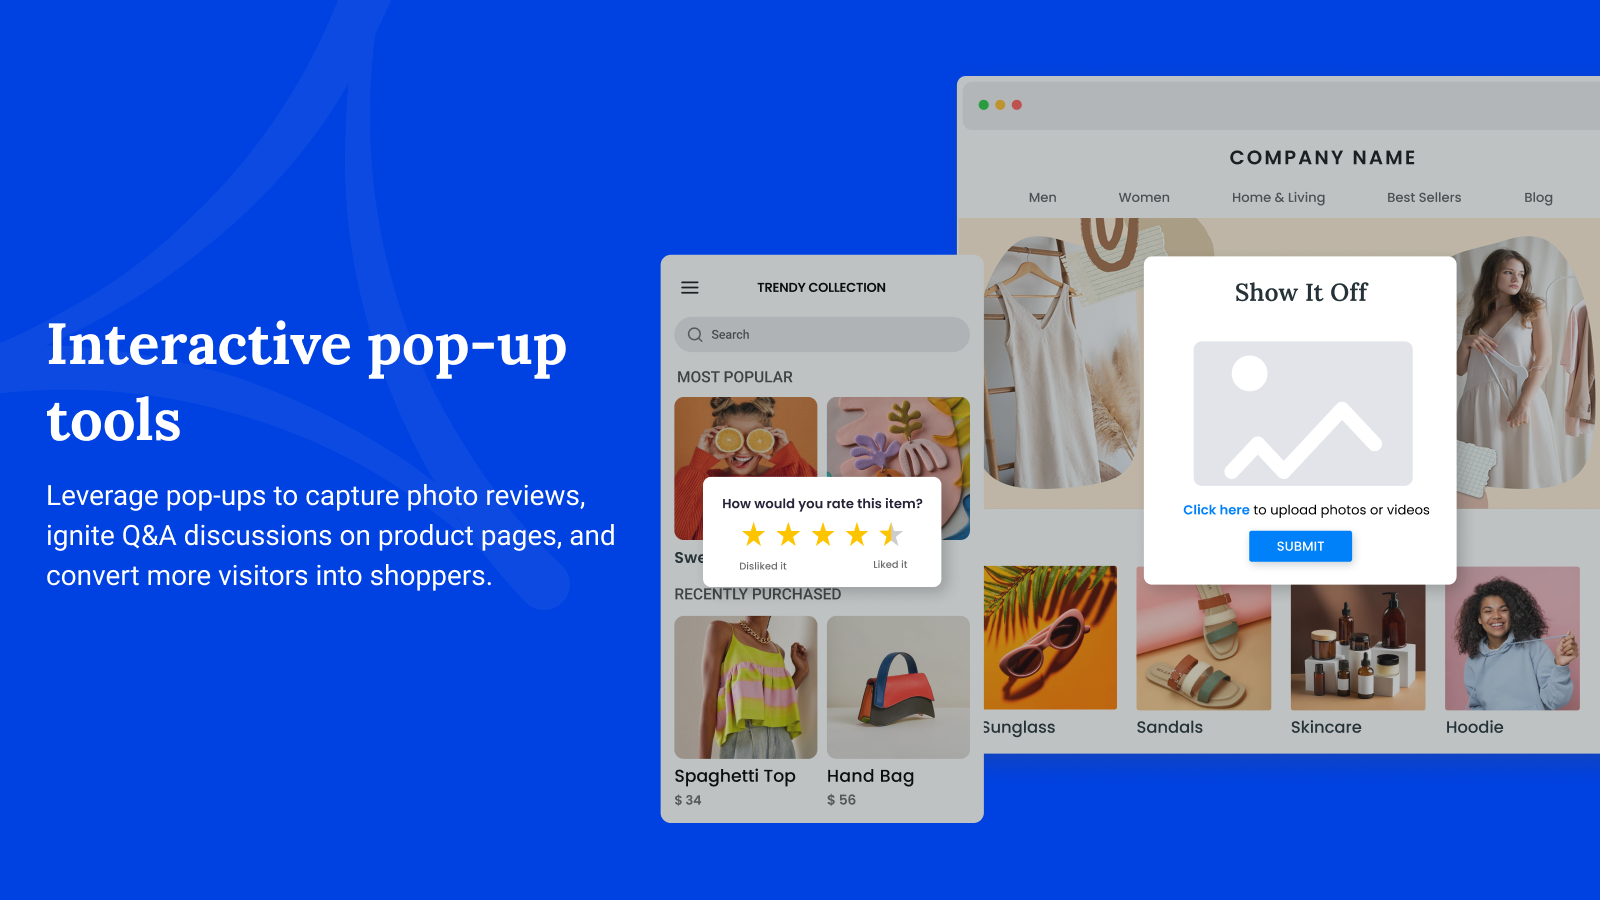 Aproveite os pop-ups para capturar avaliações com fotos nas páginas de produtos